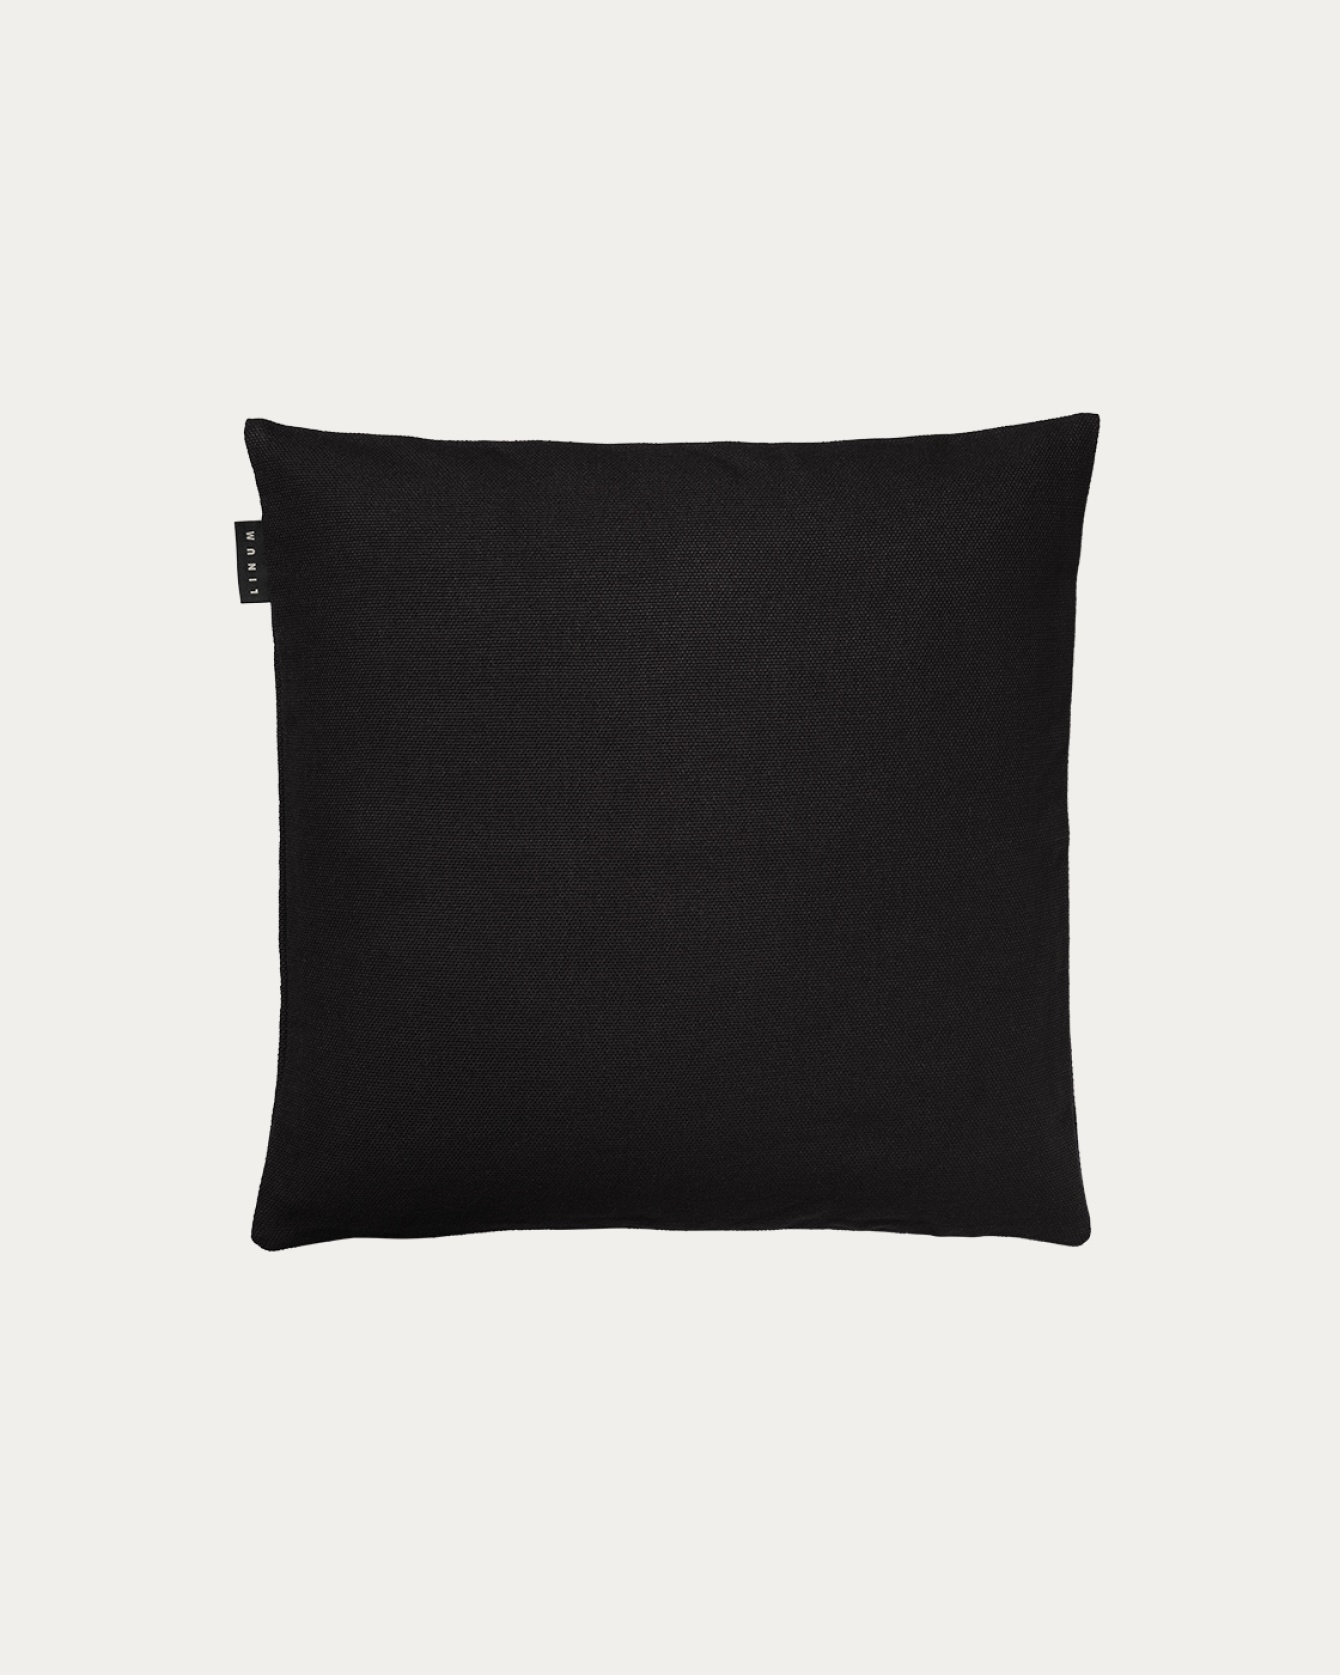 Produktbild schwarz PEPPER Kissenhülle aus weicher Baumwolle von LINUM DESIGN. Einfach zu waschen und langlebig für Generationen. Größe 40x40 cm.